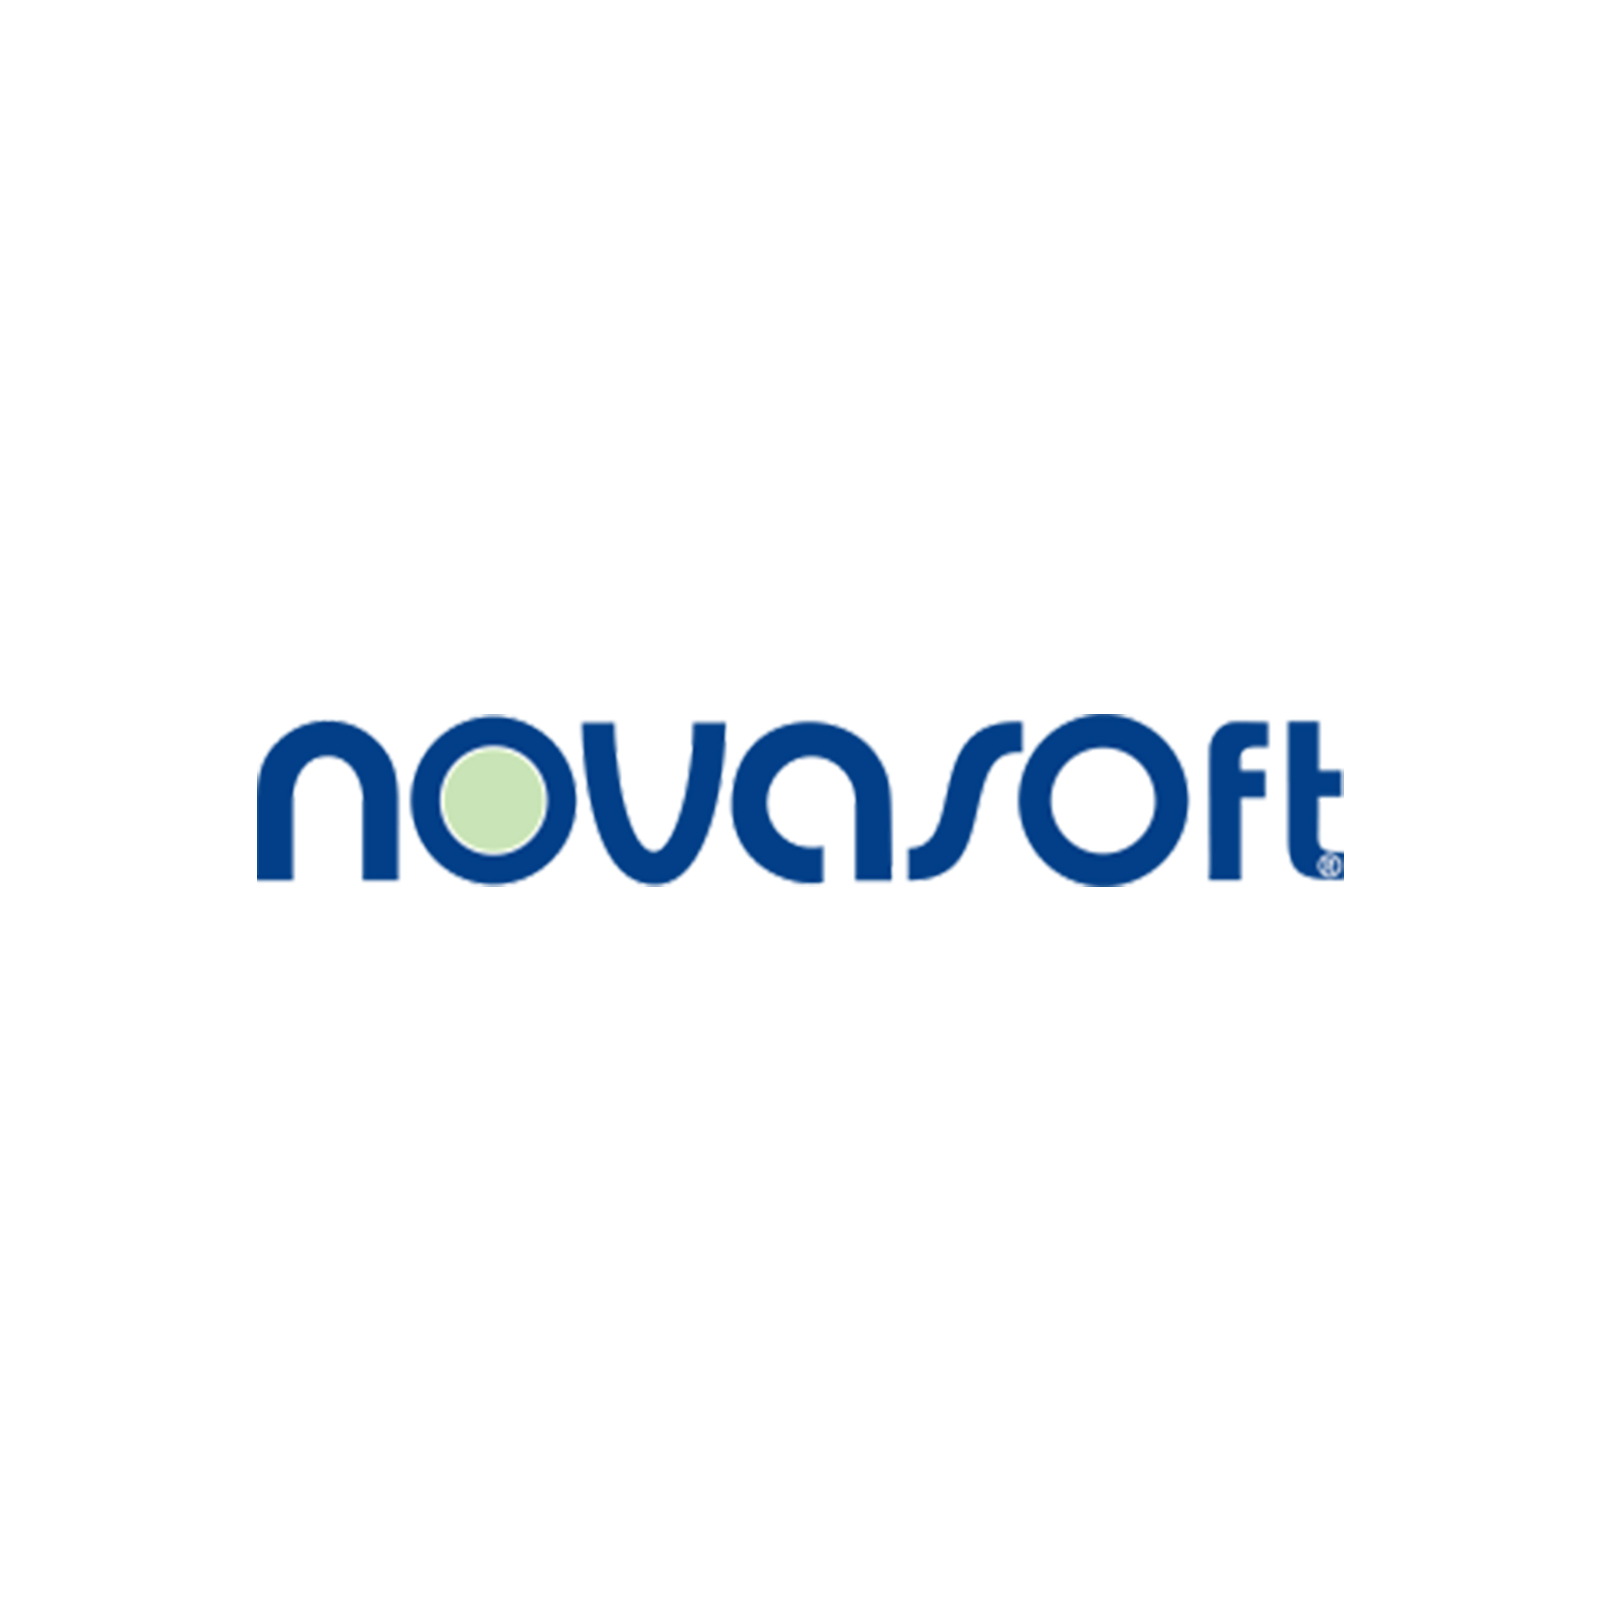 Novasoft Softwareentwicklungs GmbH [33223]